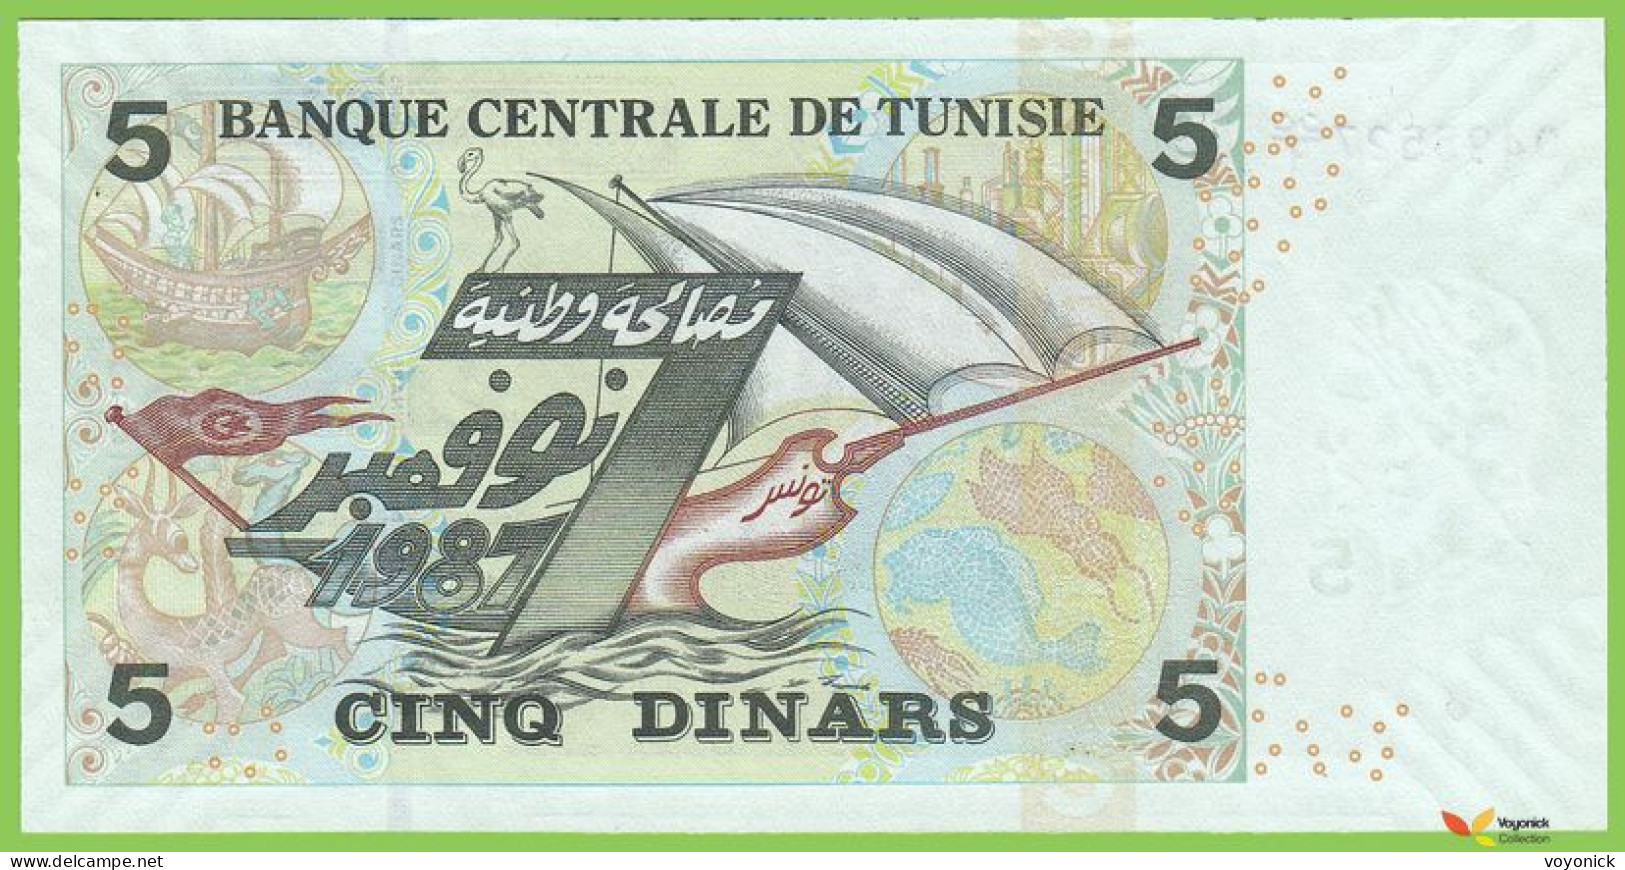 Voyo TUNISIA 5 Dinars 2008(2009) P92r B530az CR/1 UNC Replacement - Tusesië